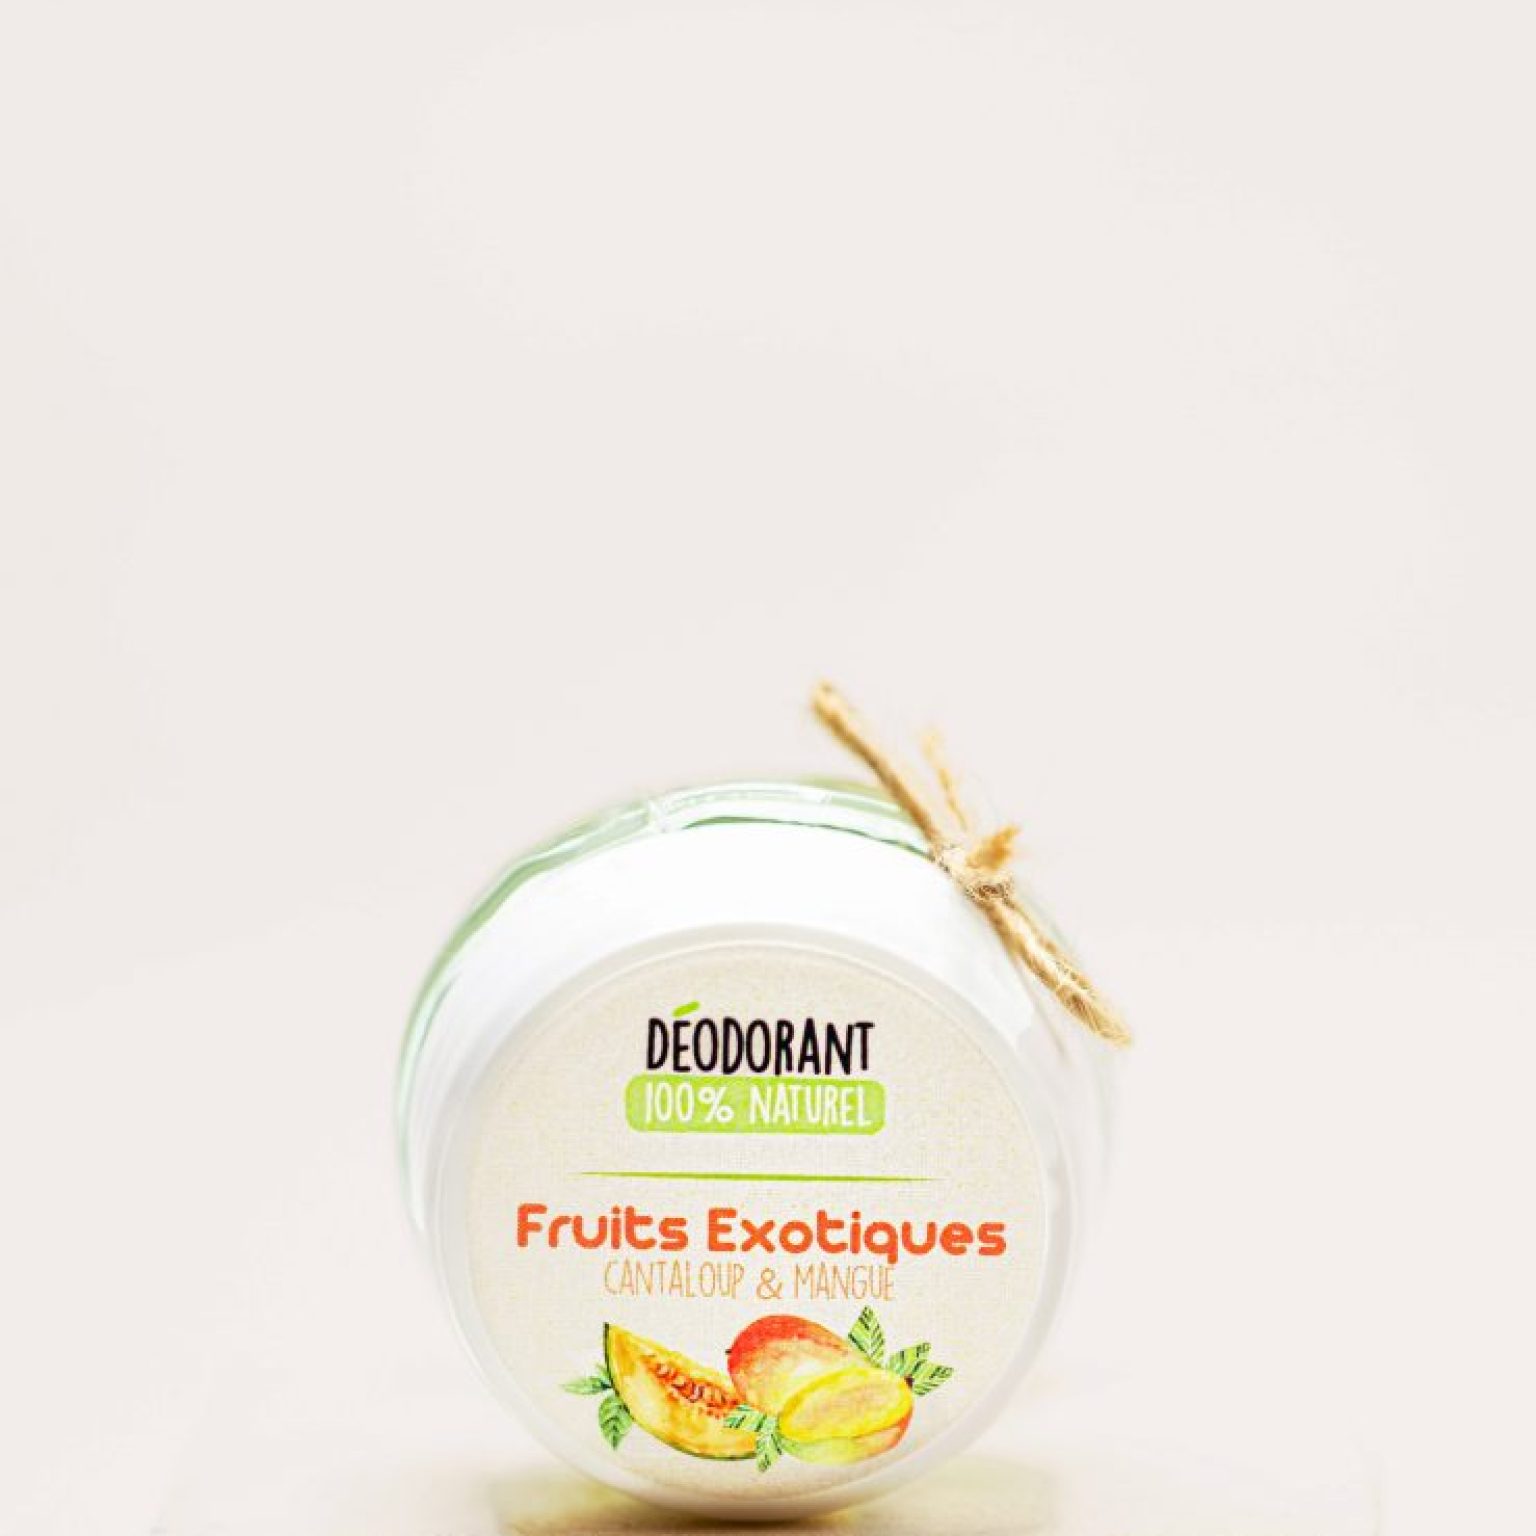 FRUITS EXOTIQUES – Déodorant crème